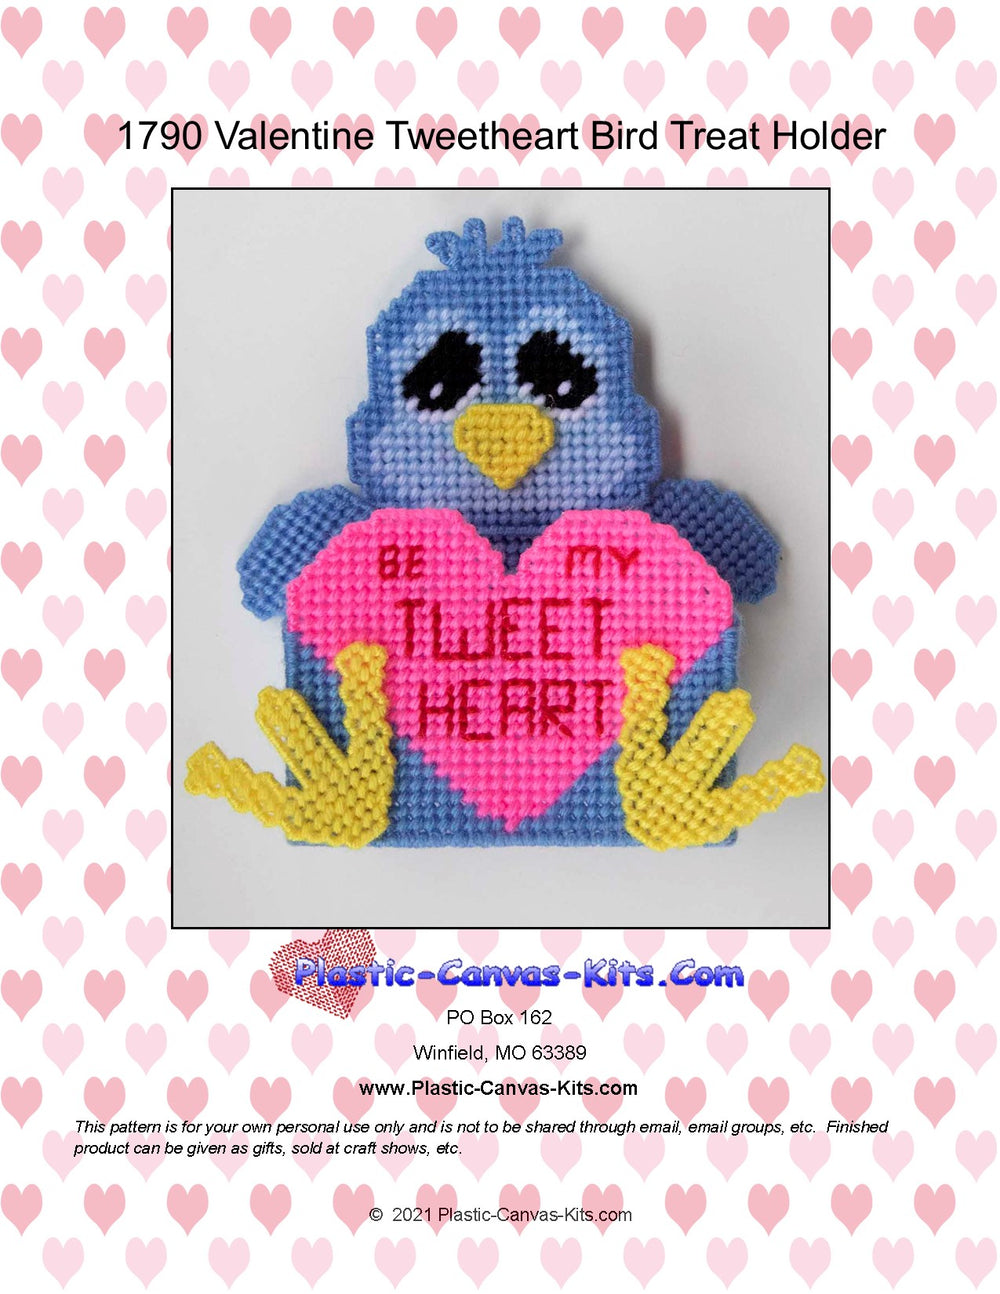 Valentine's Day Tweetheart Bird Treat Holder